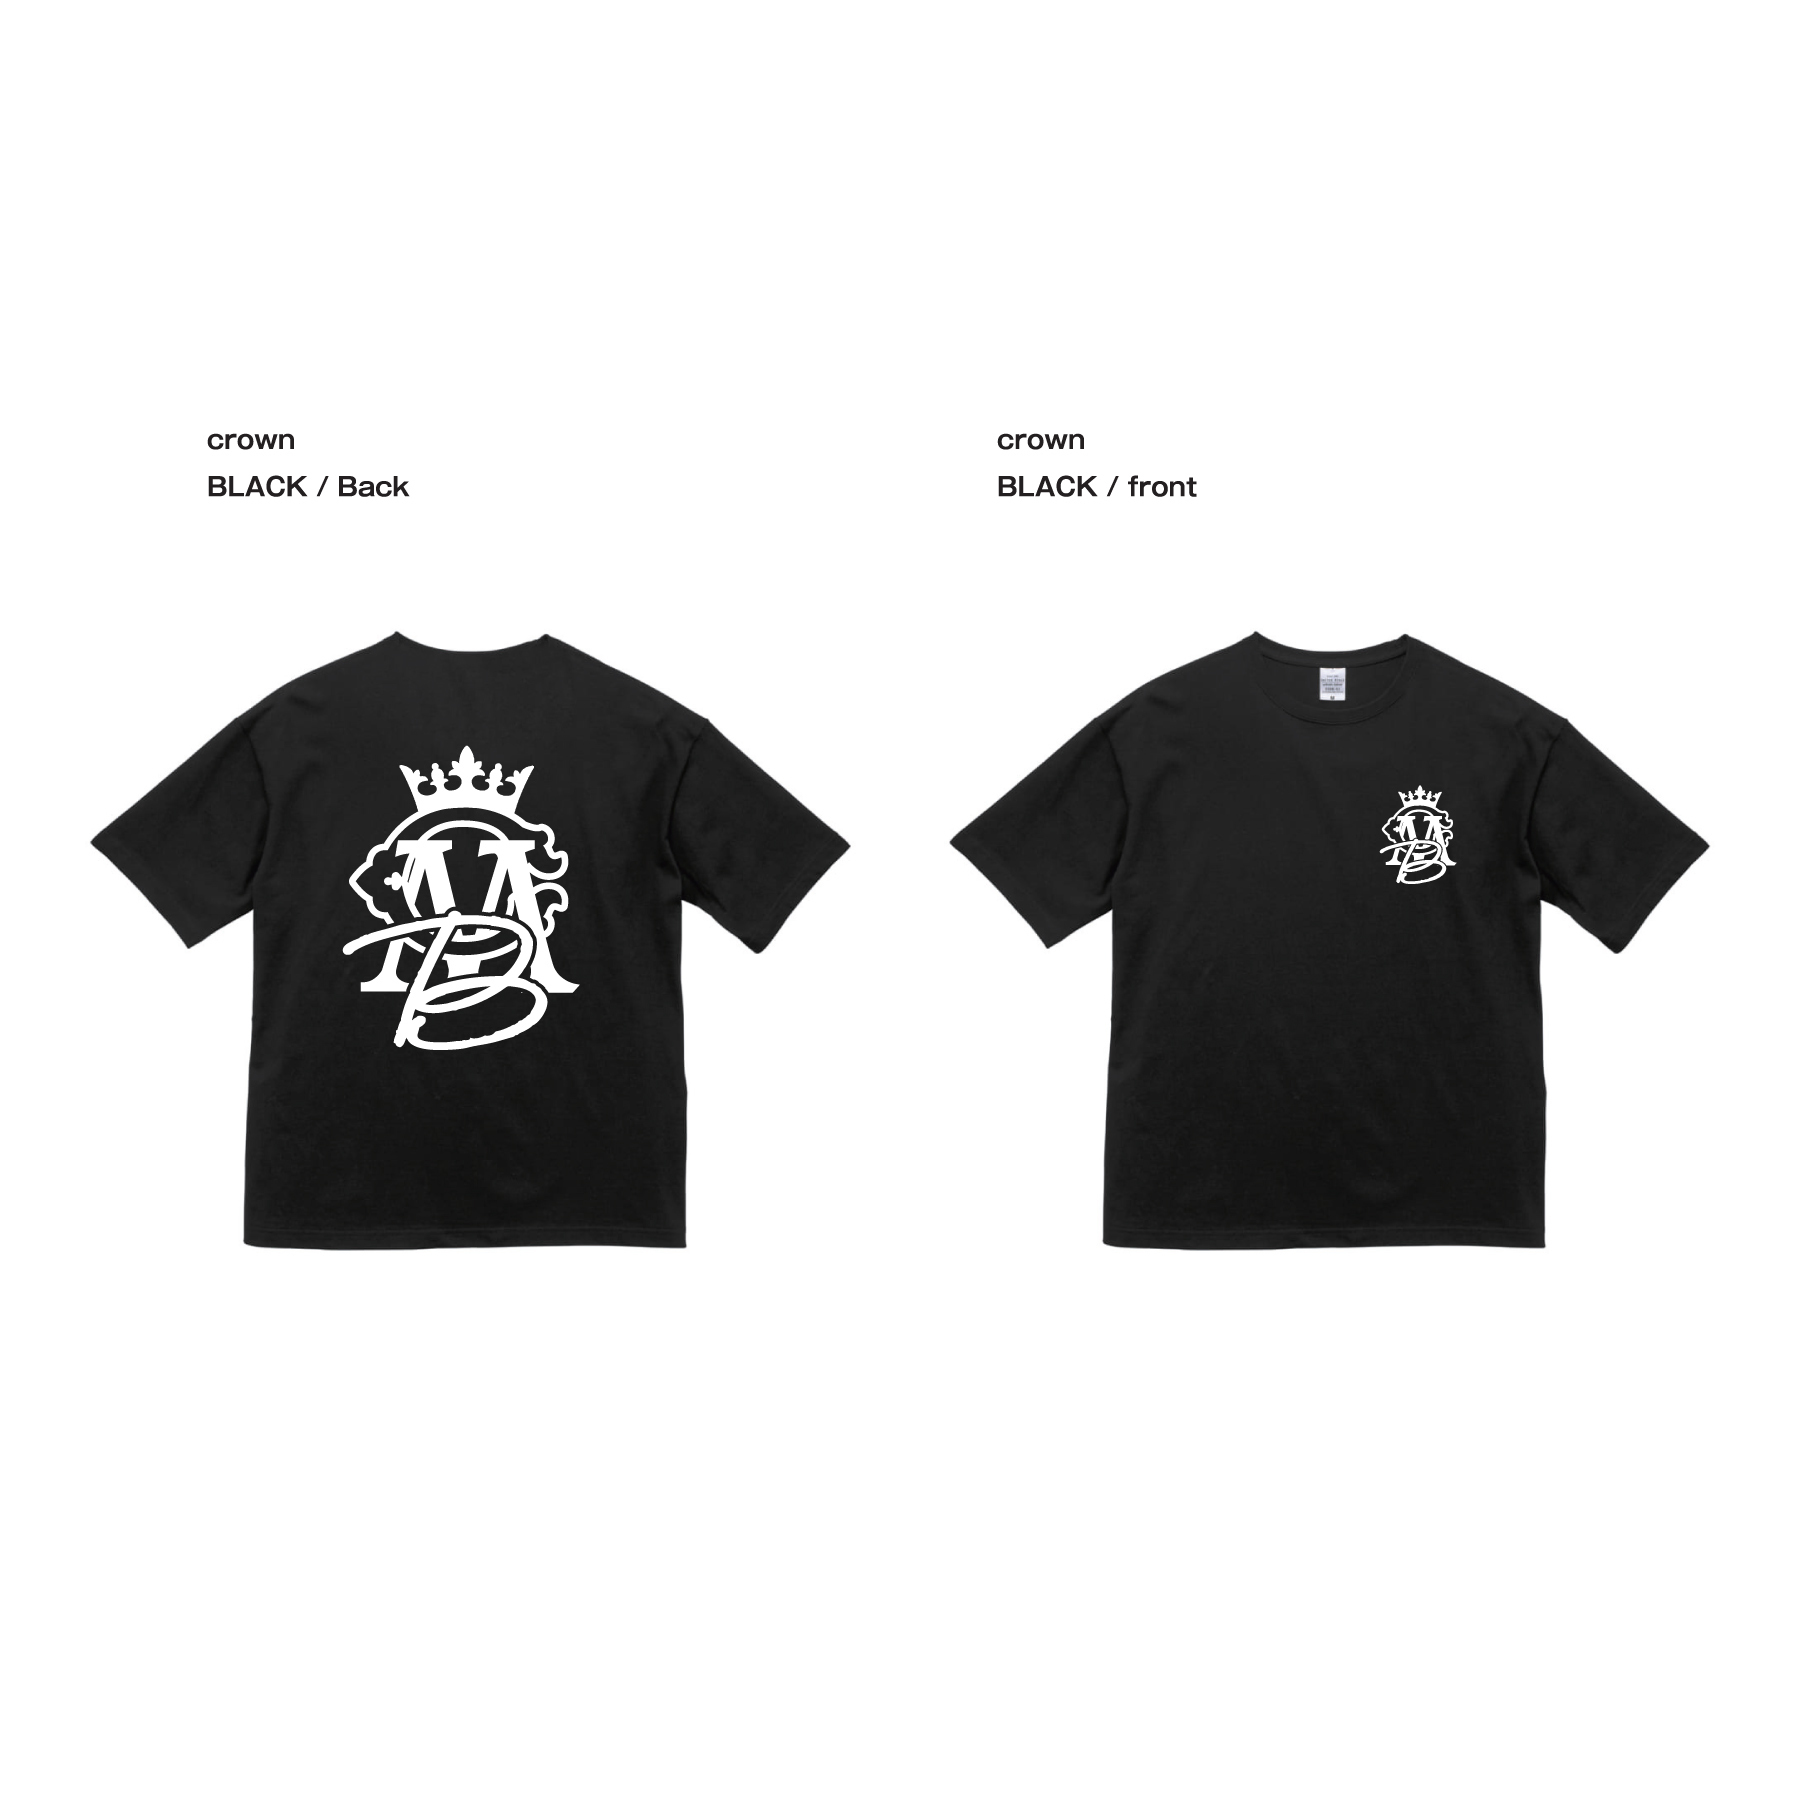 CMB CROWN Tシャツ / ブラック